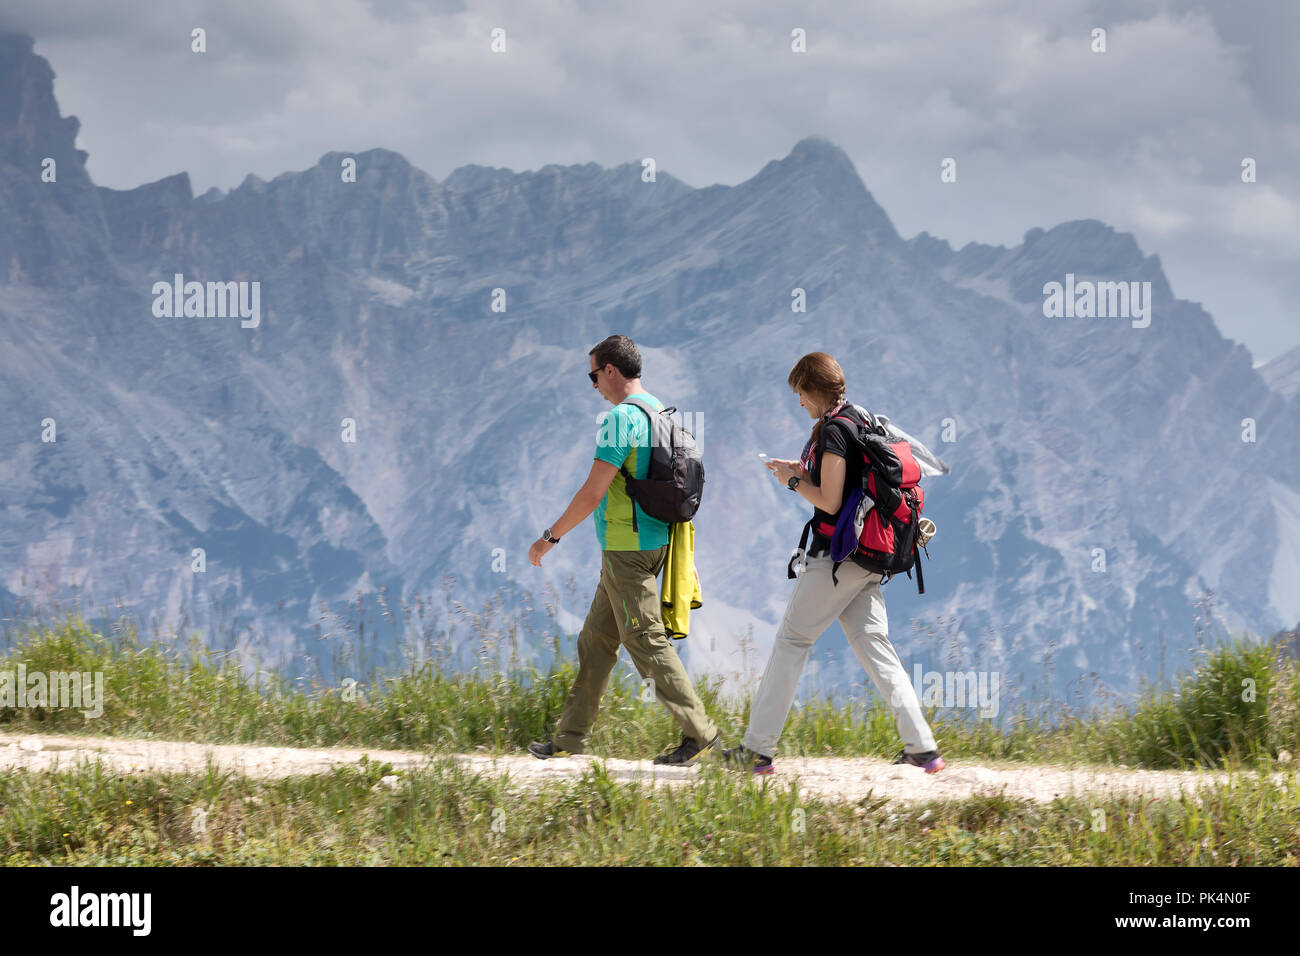 Cortina d'Ampezzo, Italien - 18. August 2018: Ein paar Wanderer, ein Mann und eine Frau mit Rucksäcken auf dem Rücken, Wanderungen auf dem Berg Trail. In der b Stockfoto